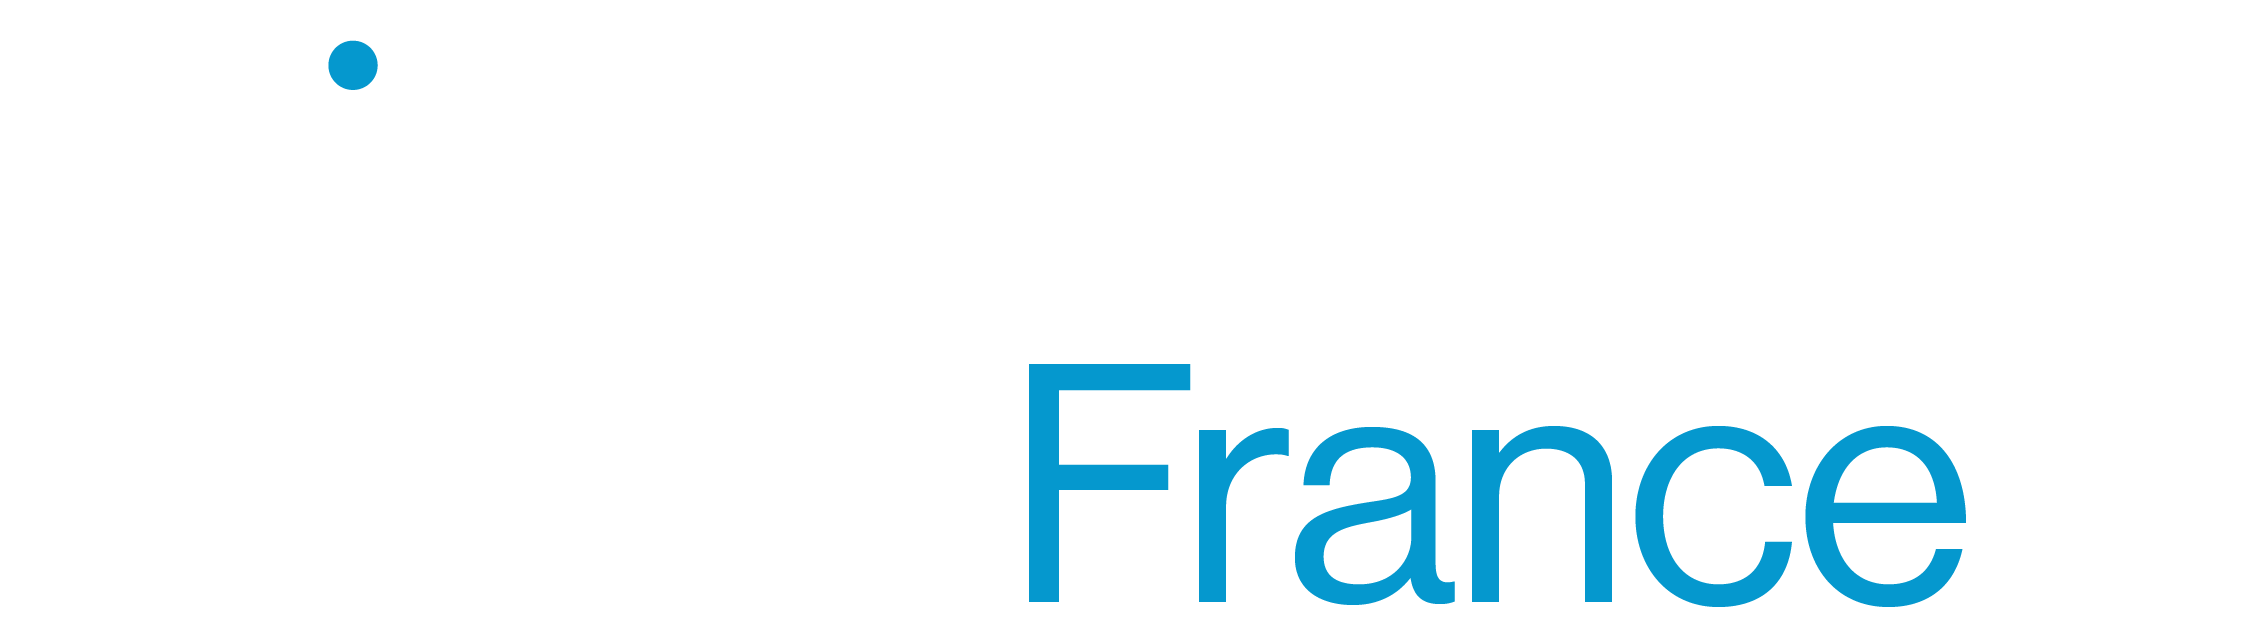 Align-France-Summit 2022 logo RGB-02